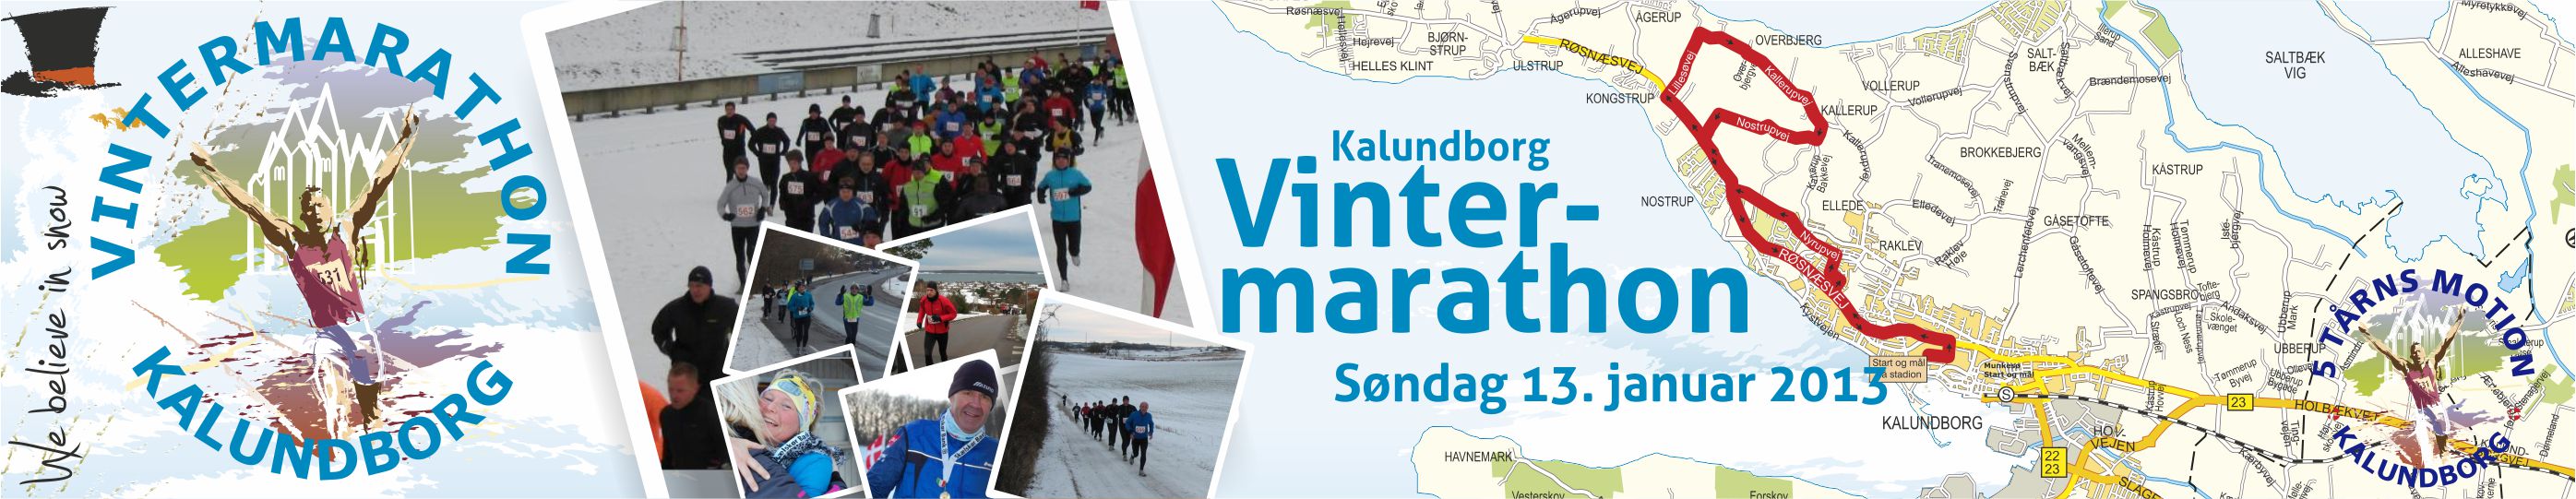 VintermarathonTopbanner2013